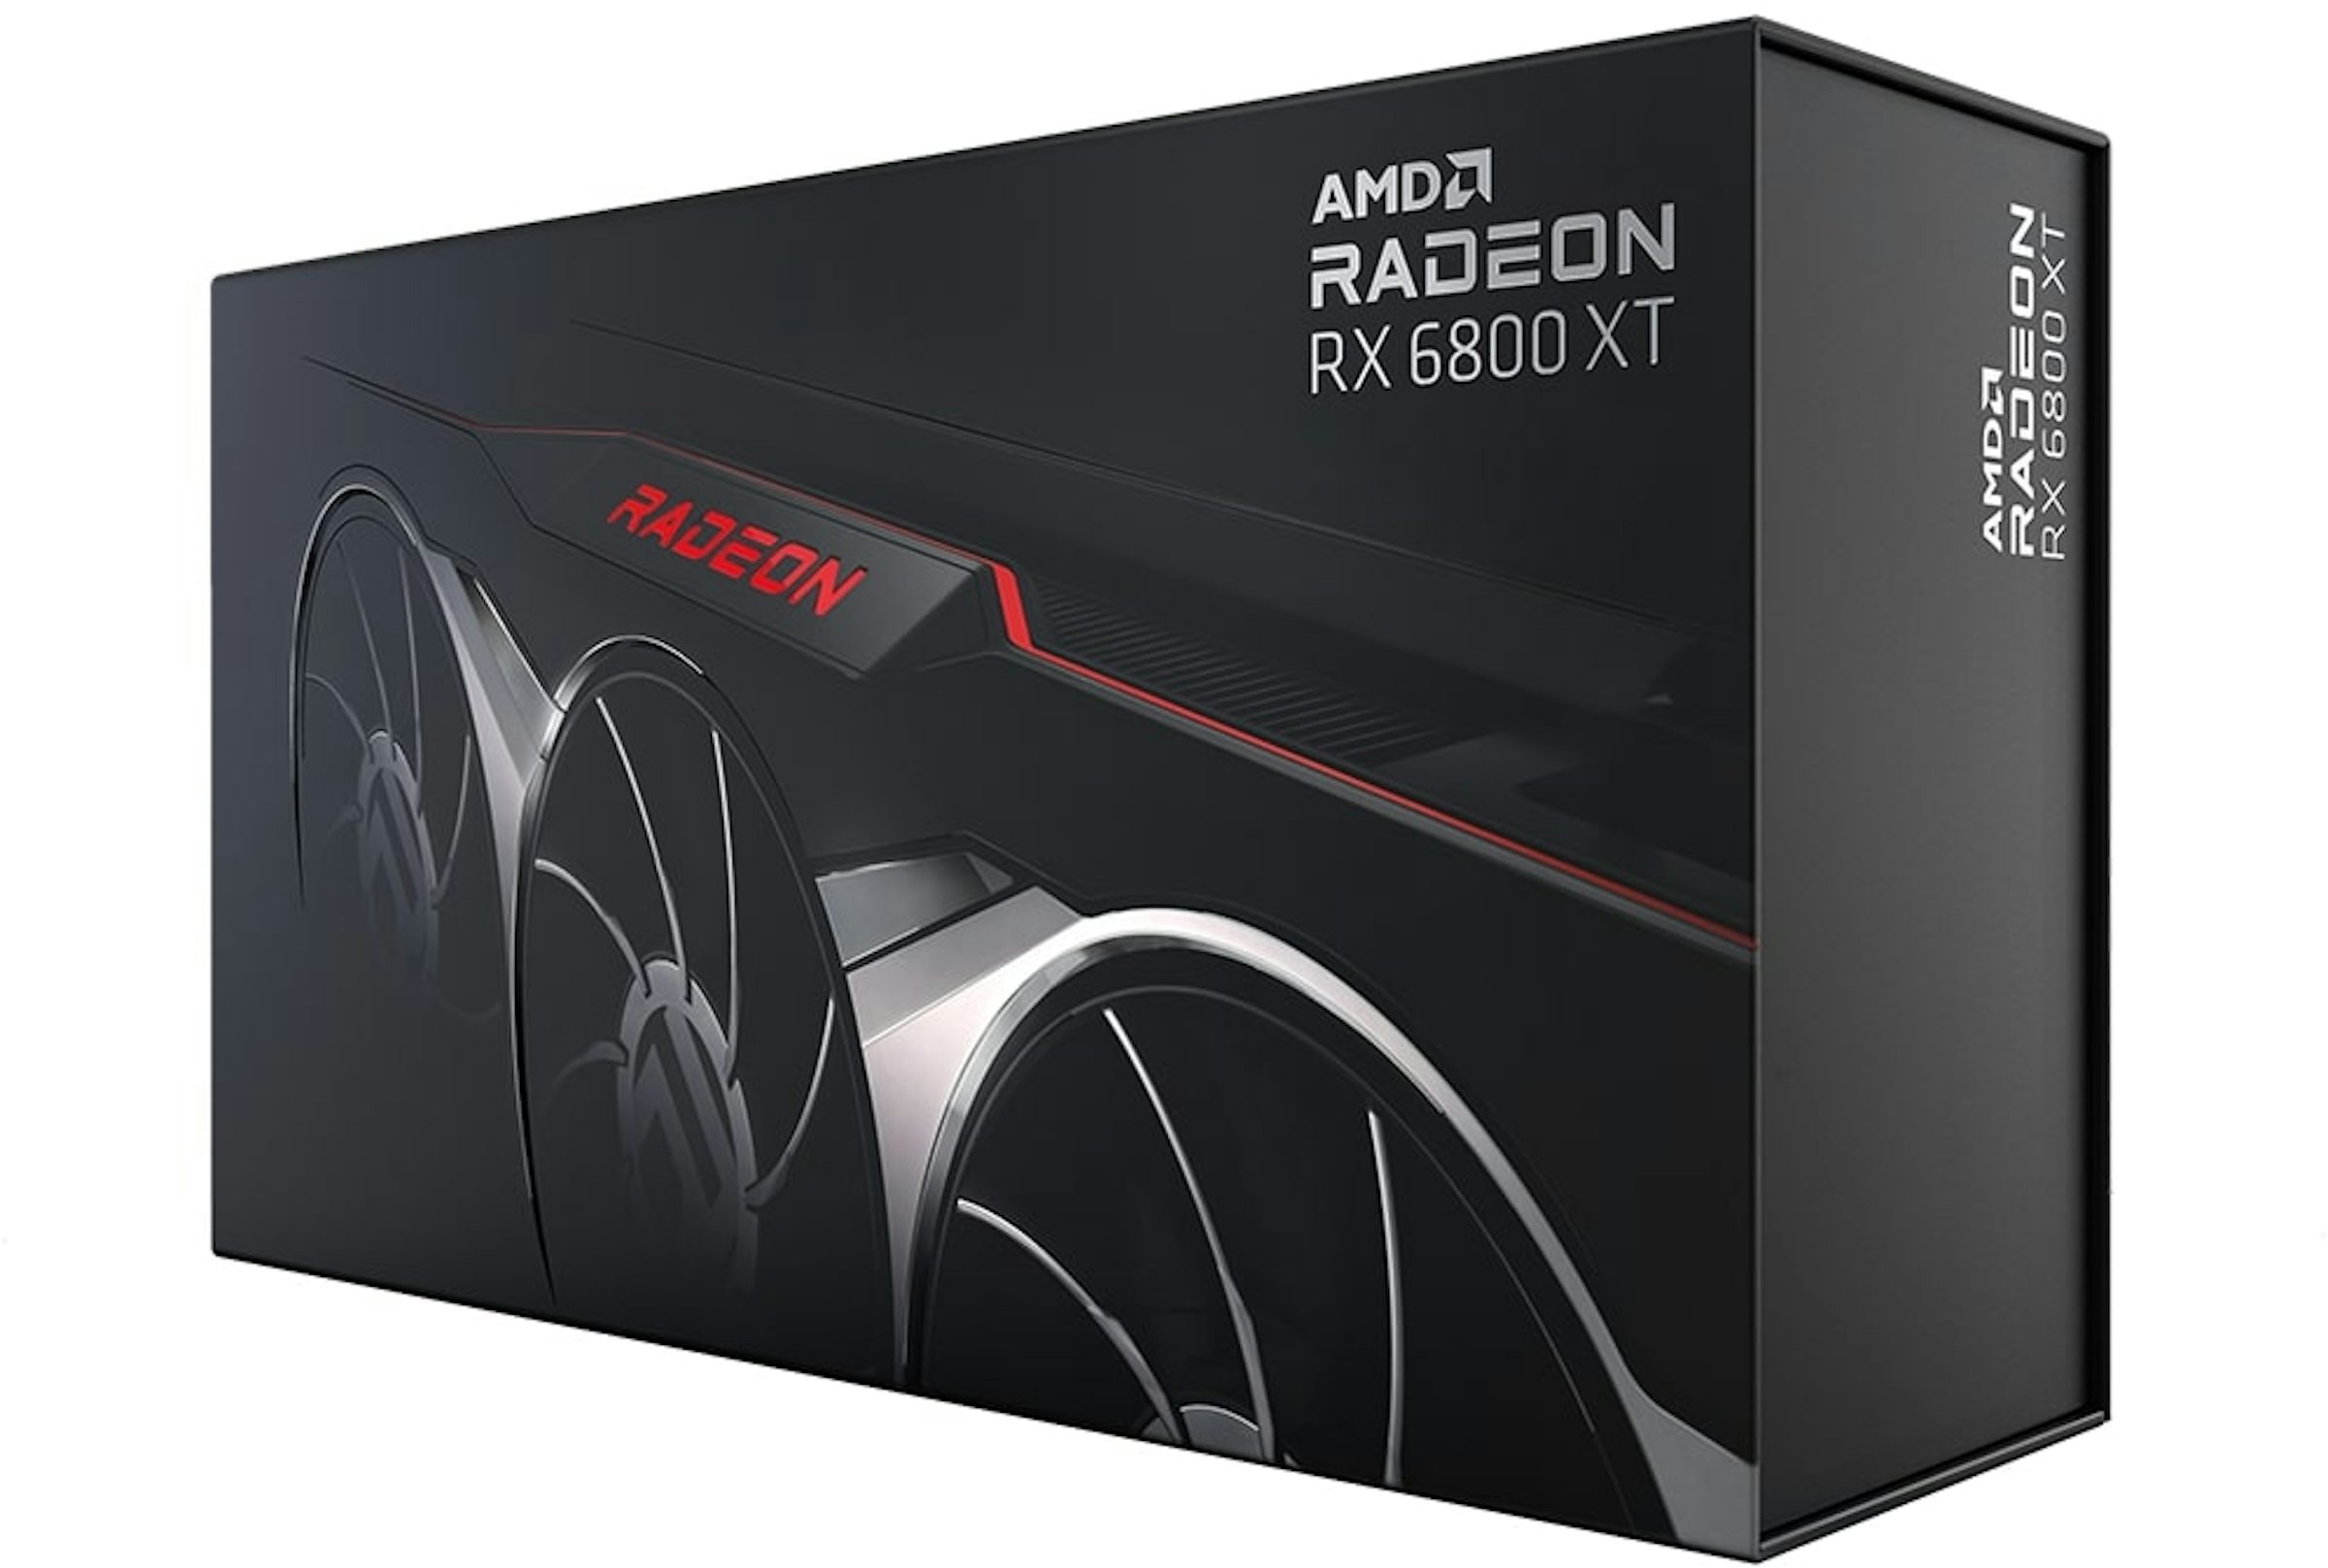 AMD Radeon RX 6800 16 GB GPU Drops Below $400 US, 6800 XT 16 GB Below $500  US